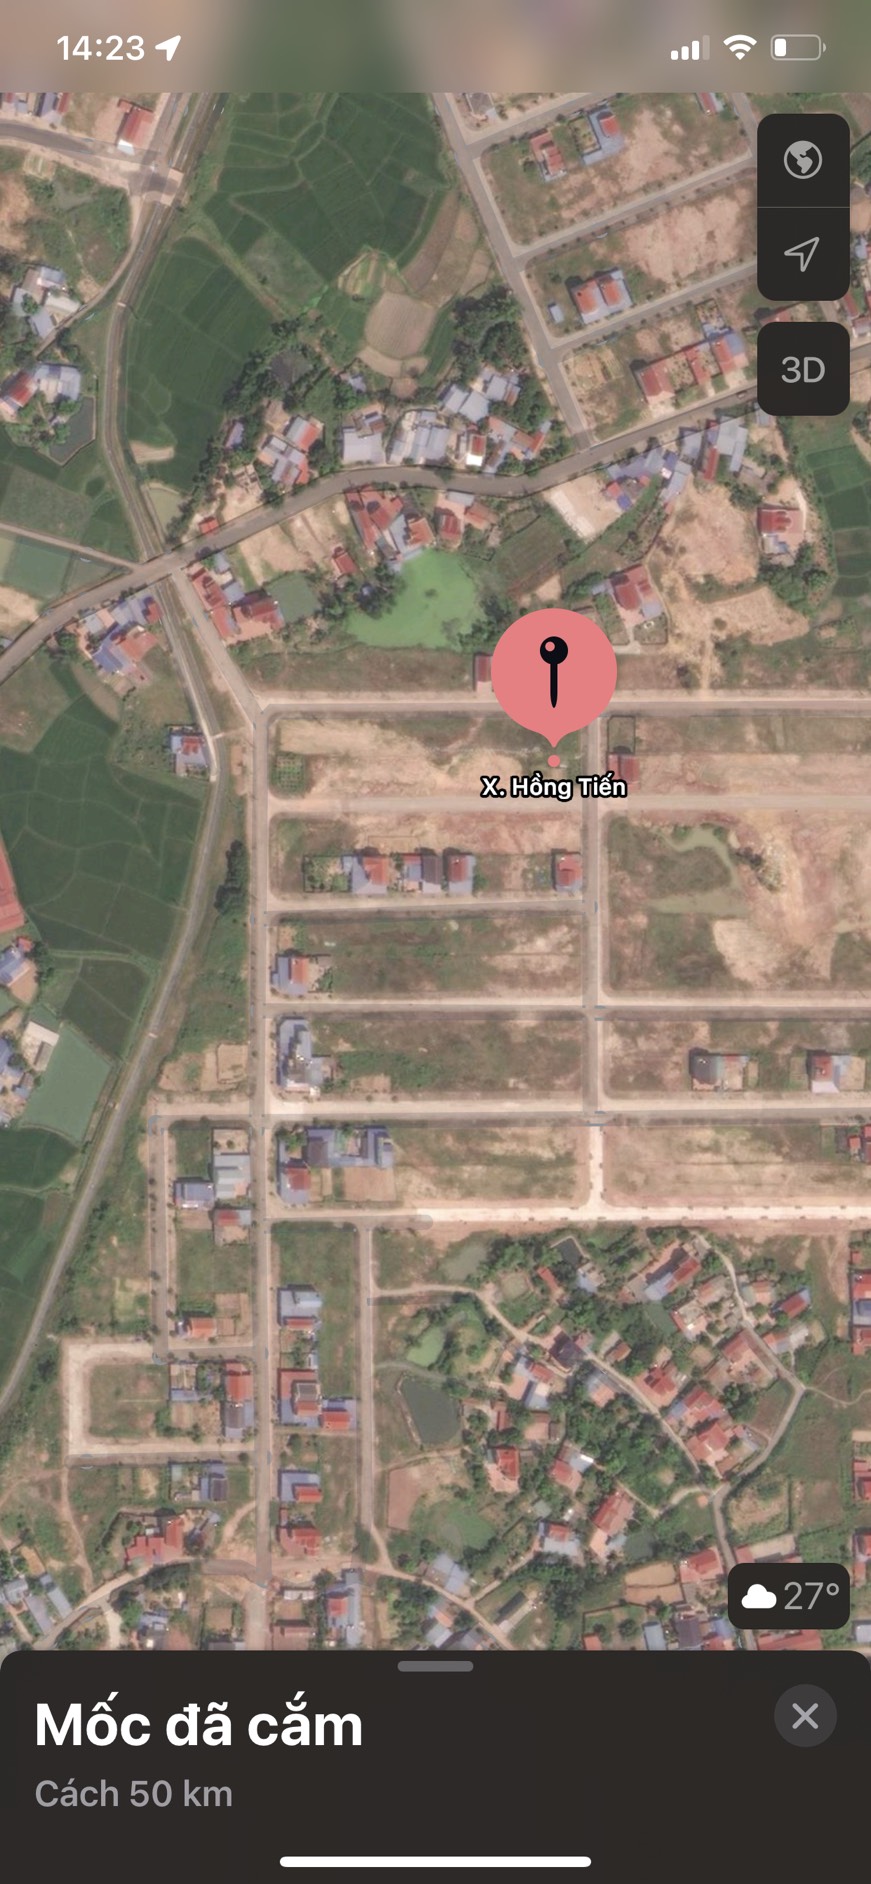 Cần bán Đất nền dự án Xã Hồng Tiến, Phổ Yên, Diện tích 100m², Giá Thương lượng - LH: 0912868835 5